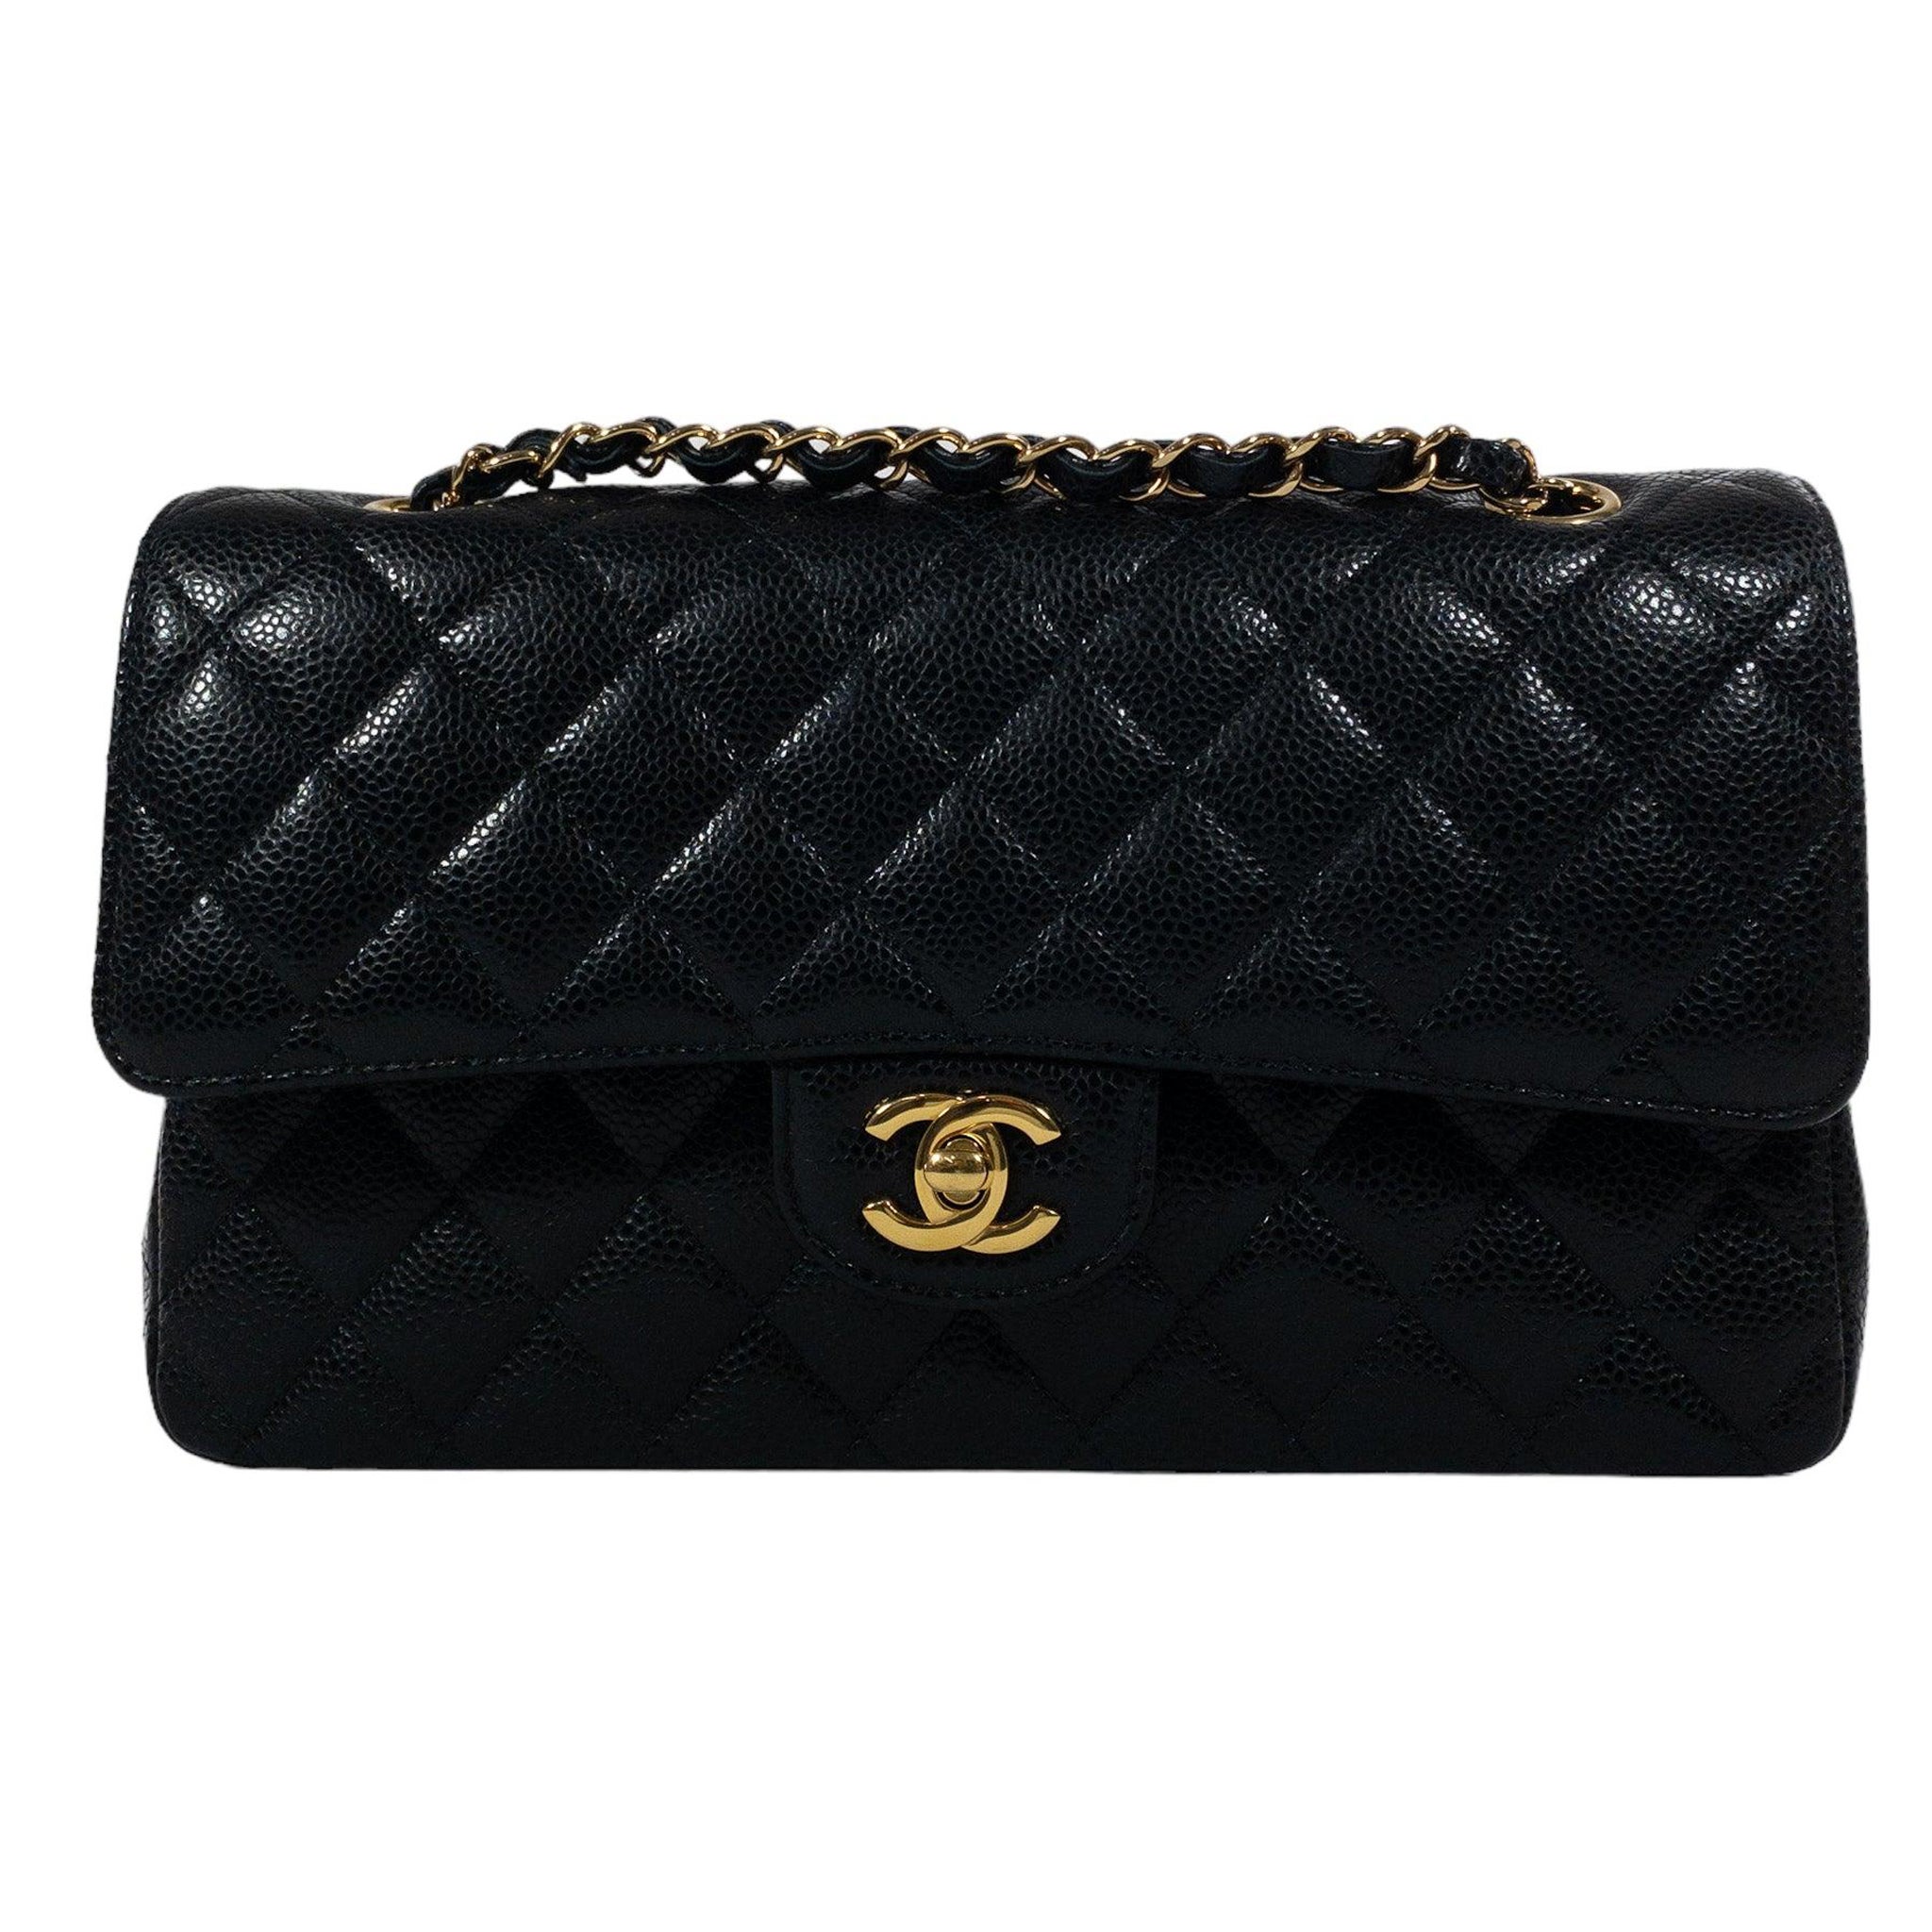 Chanel Black Caviar Medium Classic Flap GHW 